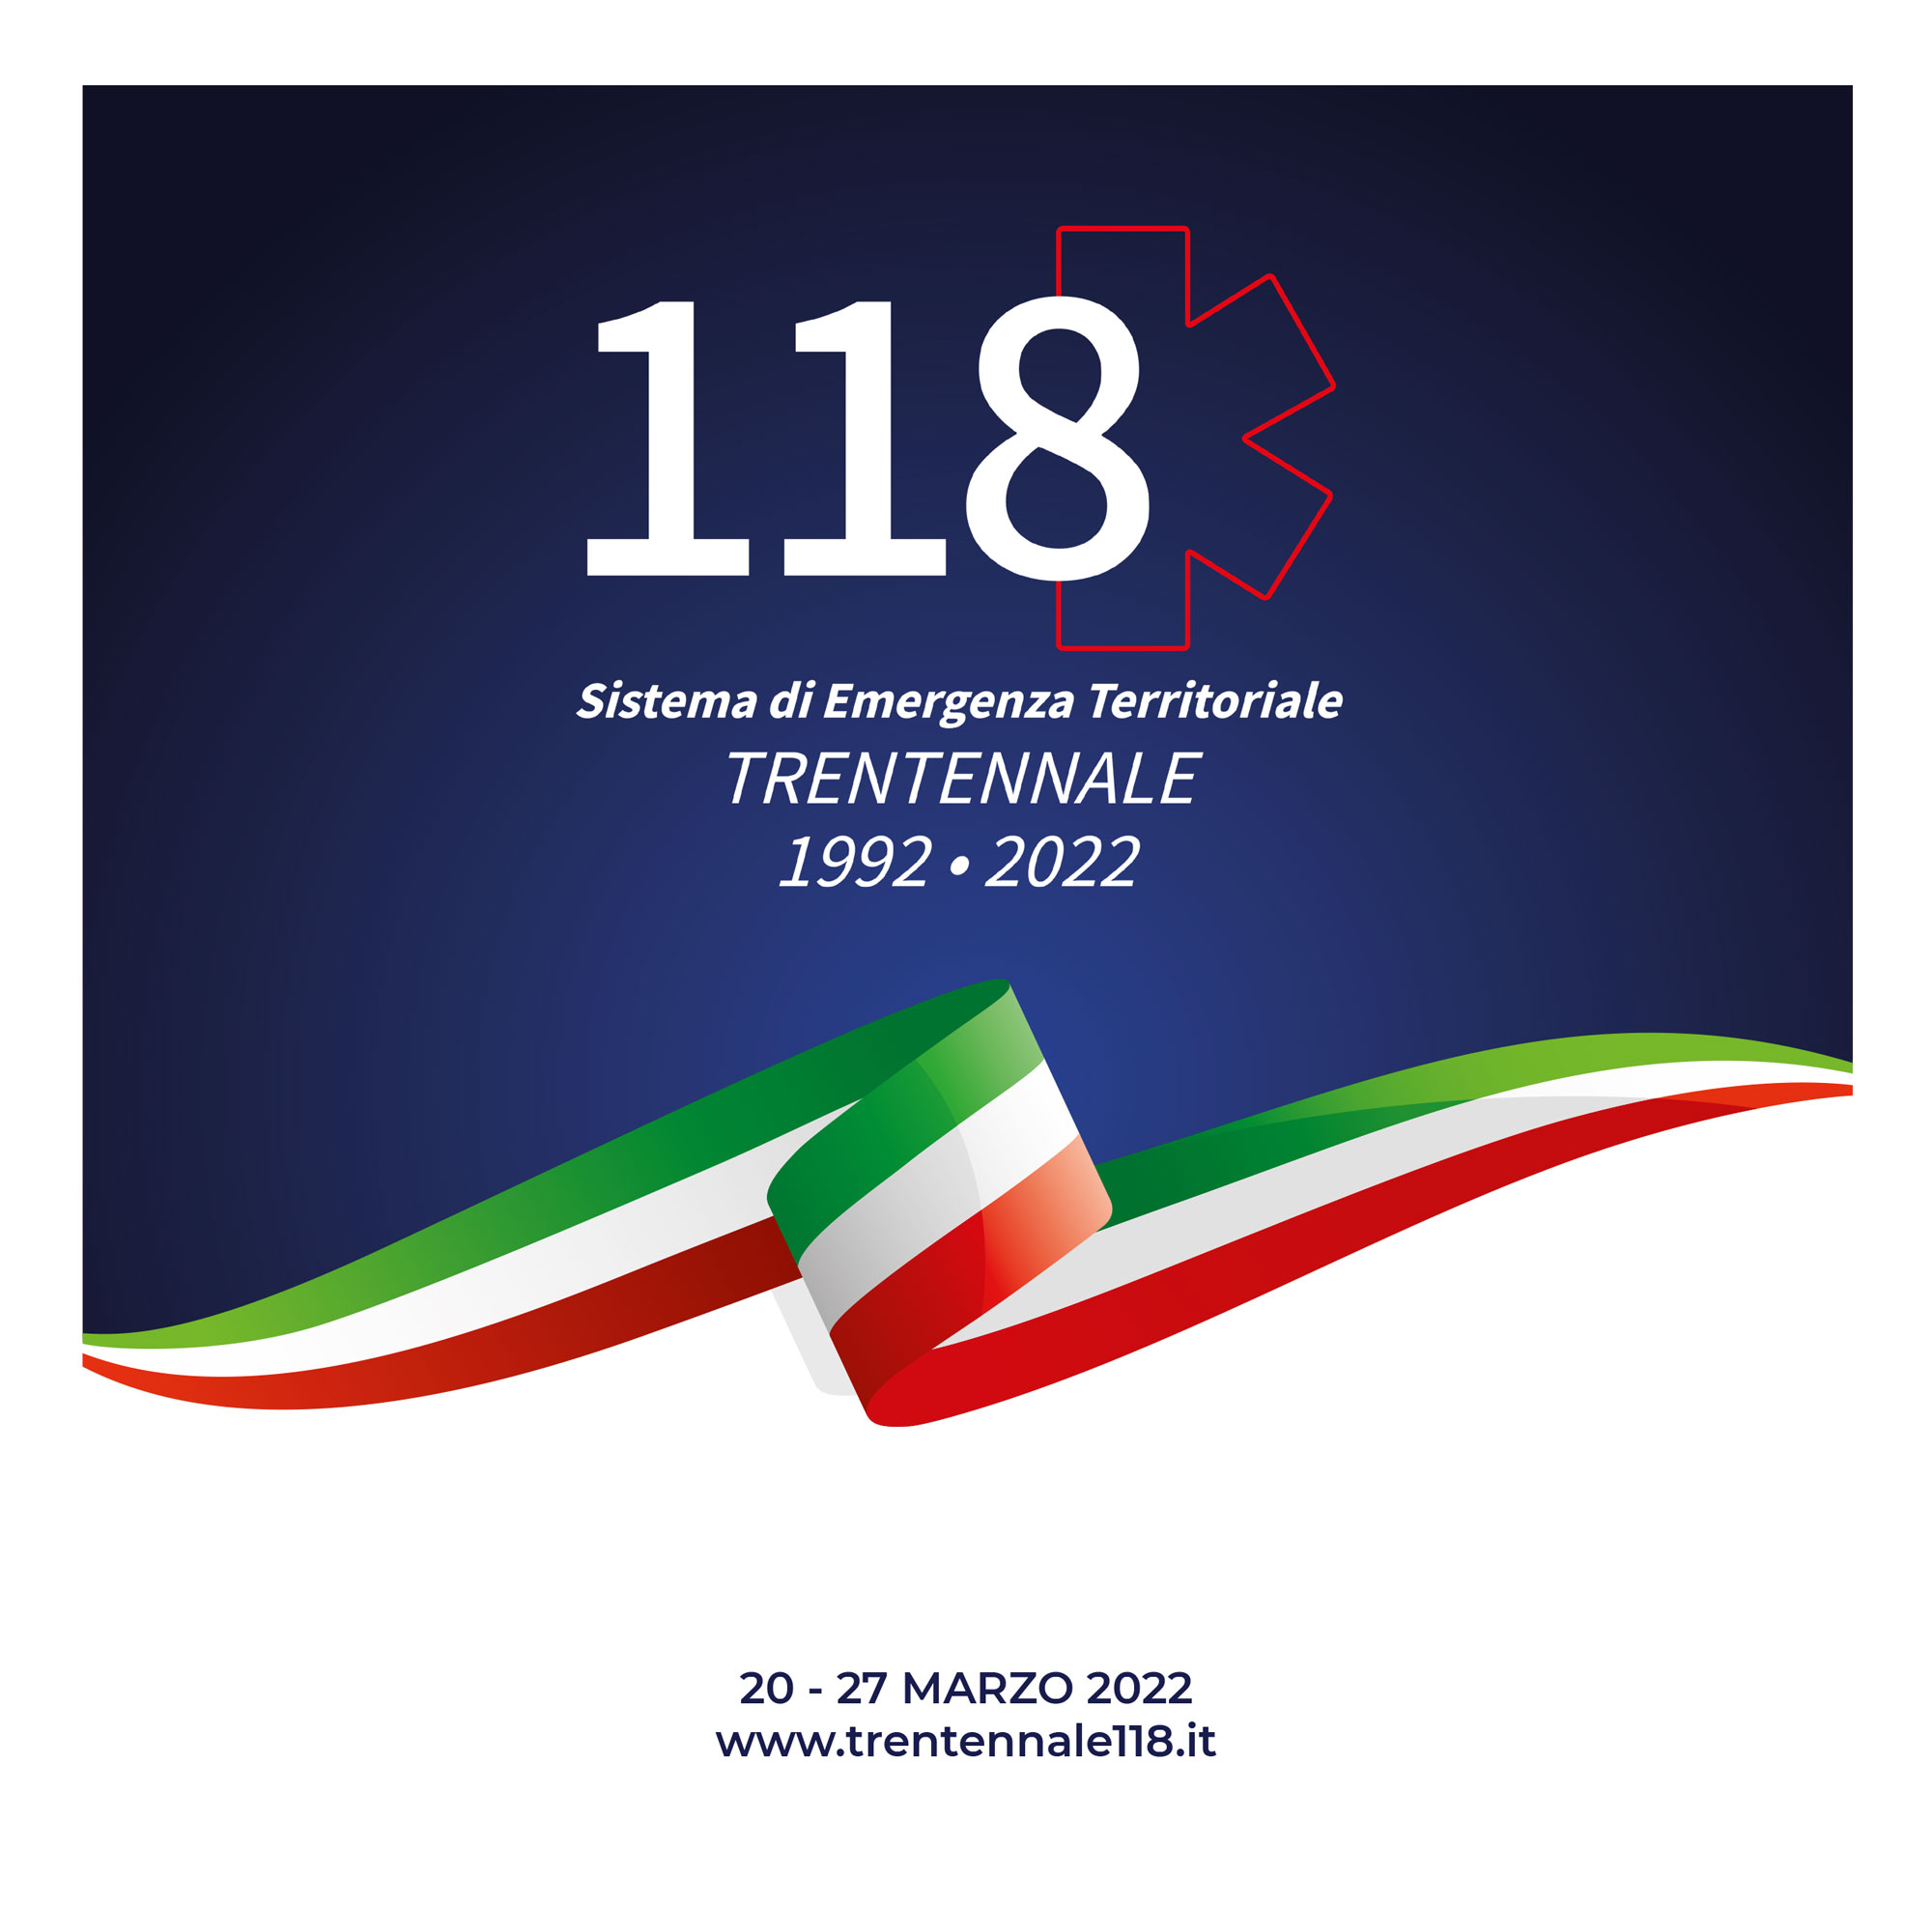 Trentennale 118: una settimana di festeggiamenti in tutta Italia